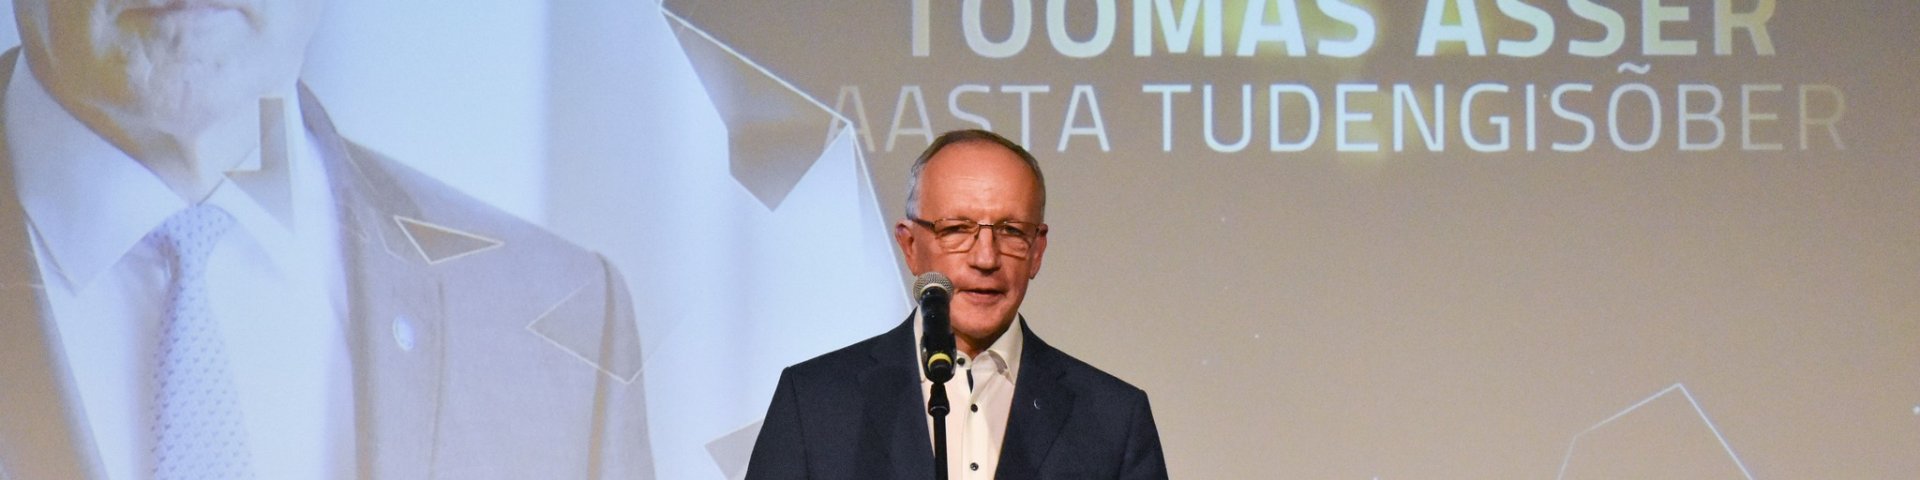 Aasta tudengisõbra tiitli pälvis rektor Toomas Asser.